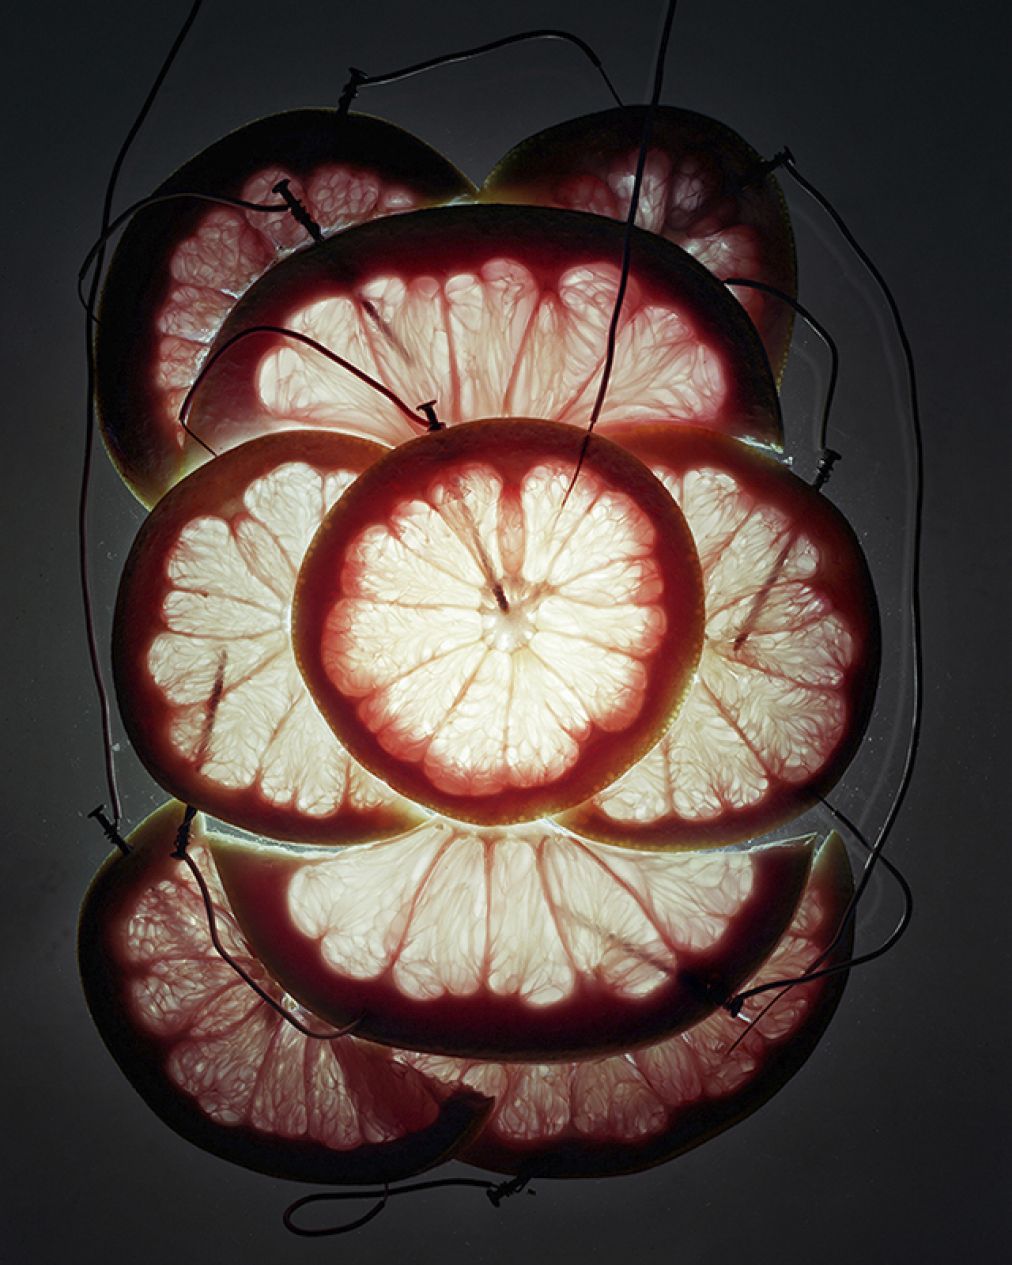 精彩且不失生活 水果节能灯的创意拍摄